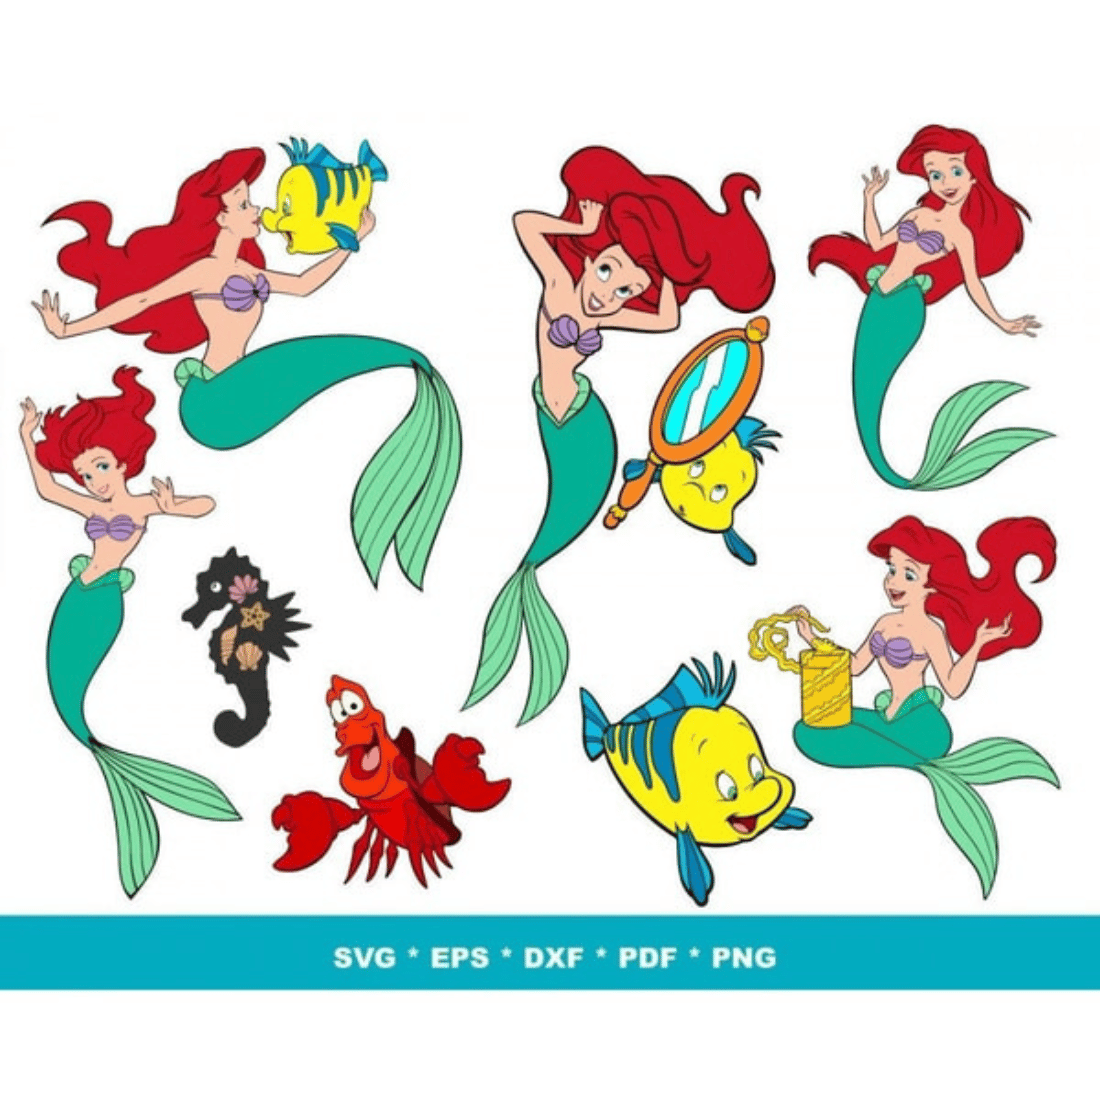 Little Mermaid SVG, Mermaid Tail SVG, Mermaid Symbol, Mermaid Clipart, Ariel SVG, Mermaid Silhouette, Little Mermaid PNG preview image.